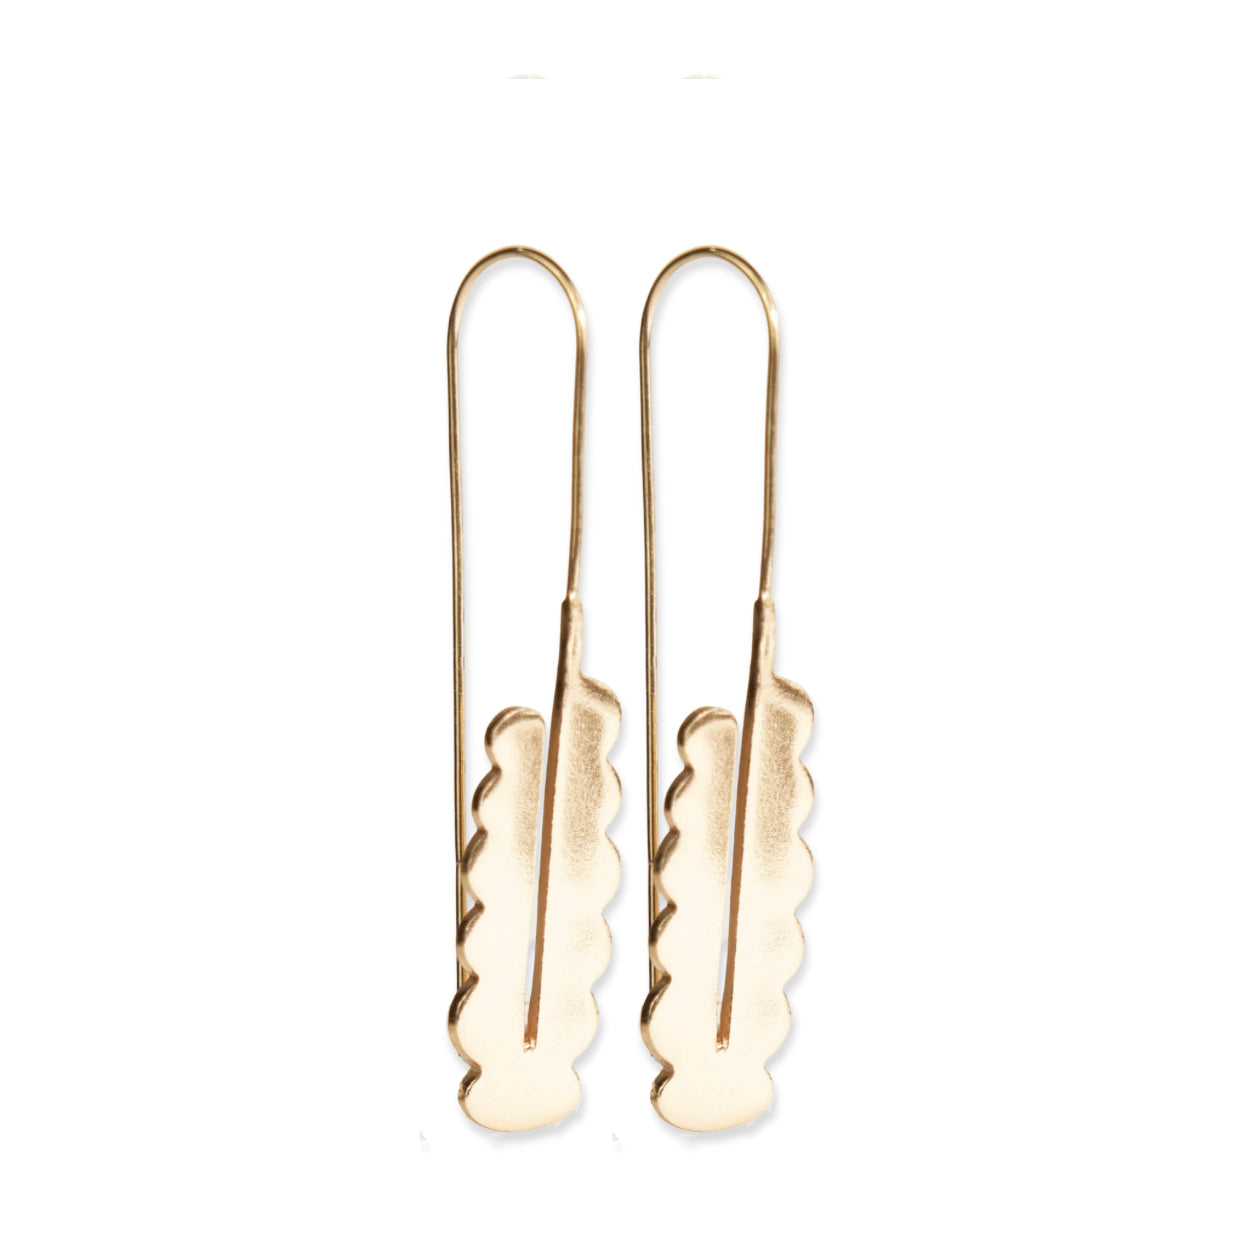 Scalloped Threaded Gold Earrings